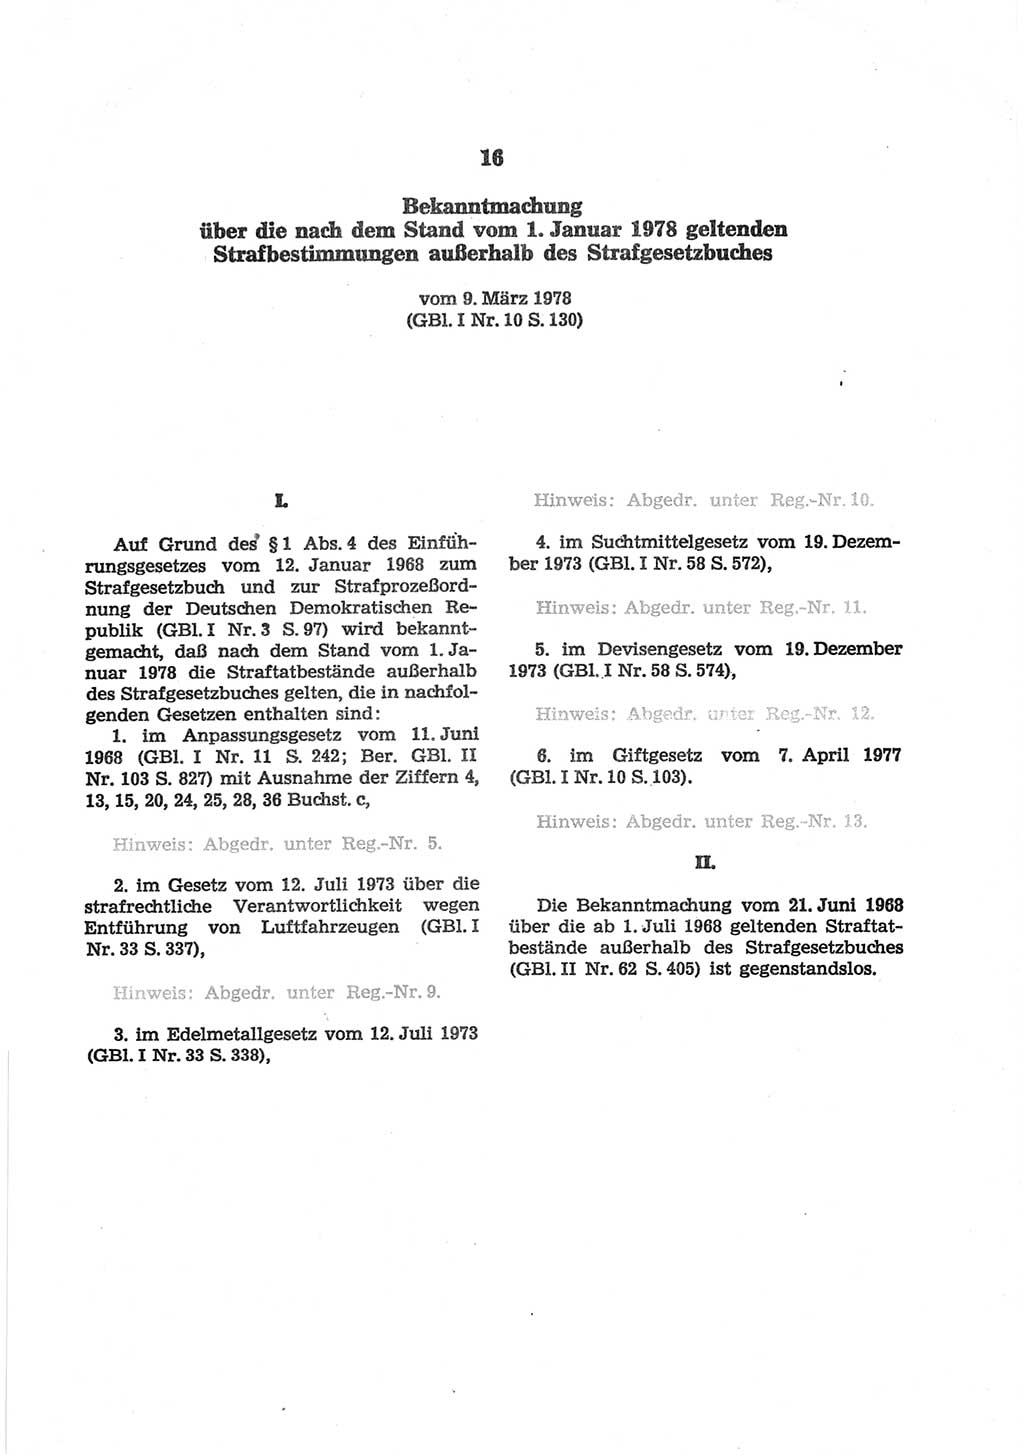 Strafgesetzbuch (StGB) der Deutschen Demokratischen Republik (DDR) und angrenzende Gesetze und Bestimmungen 1977, Seite 247 (StGB DDR Ges. Best. 1977, S. 247)